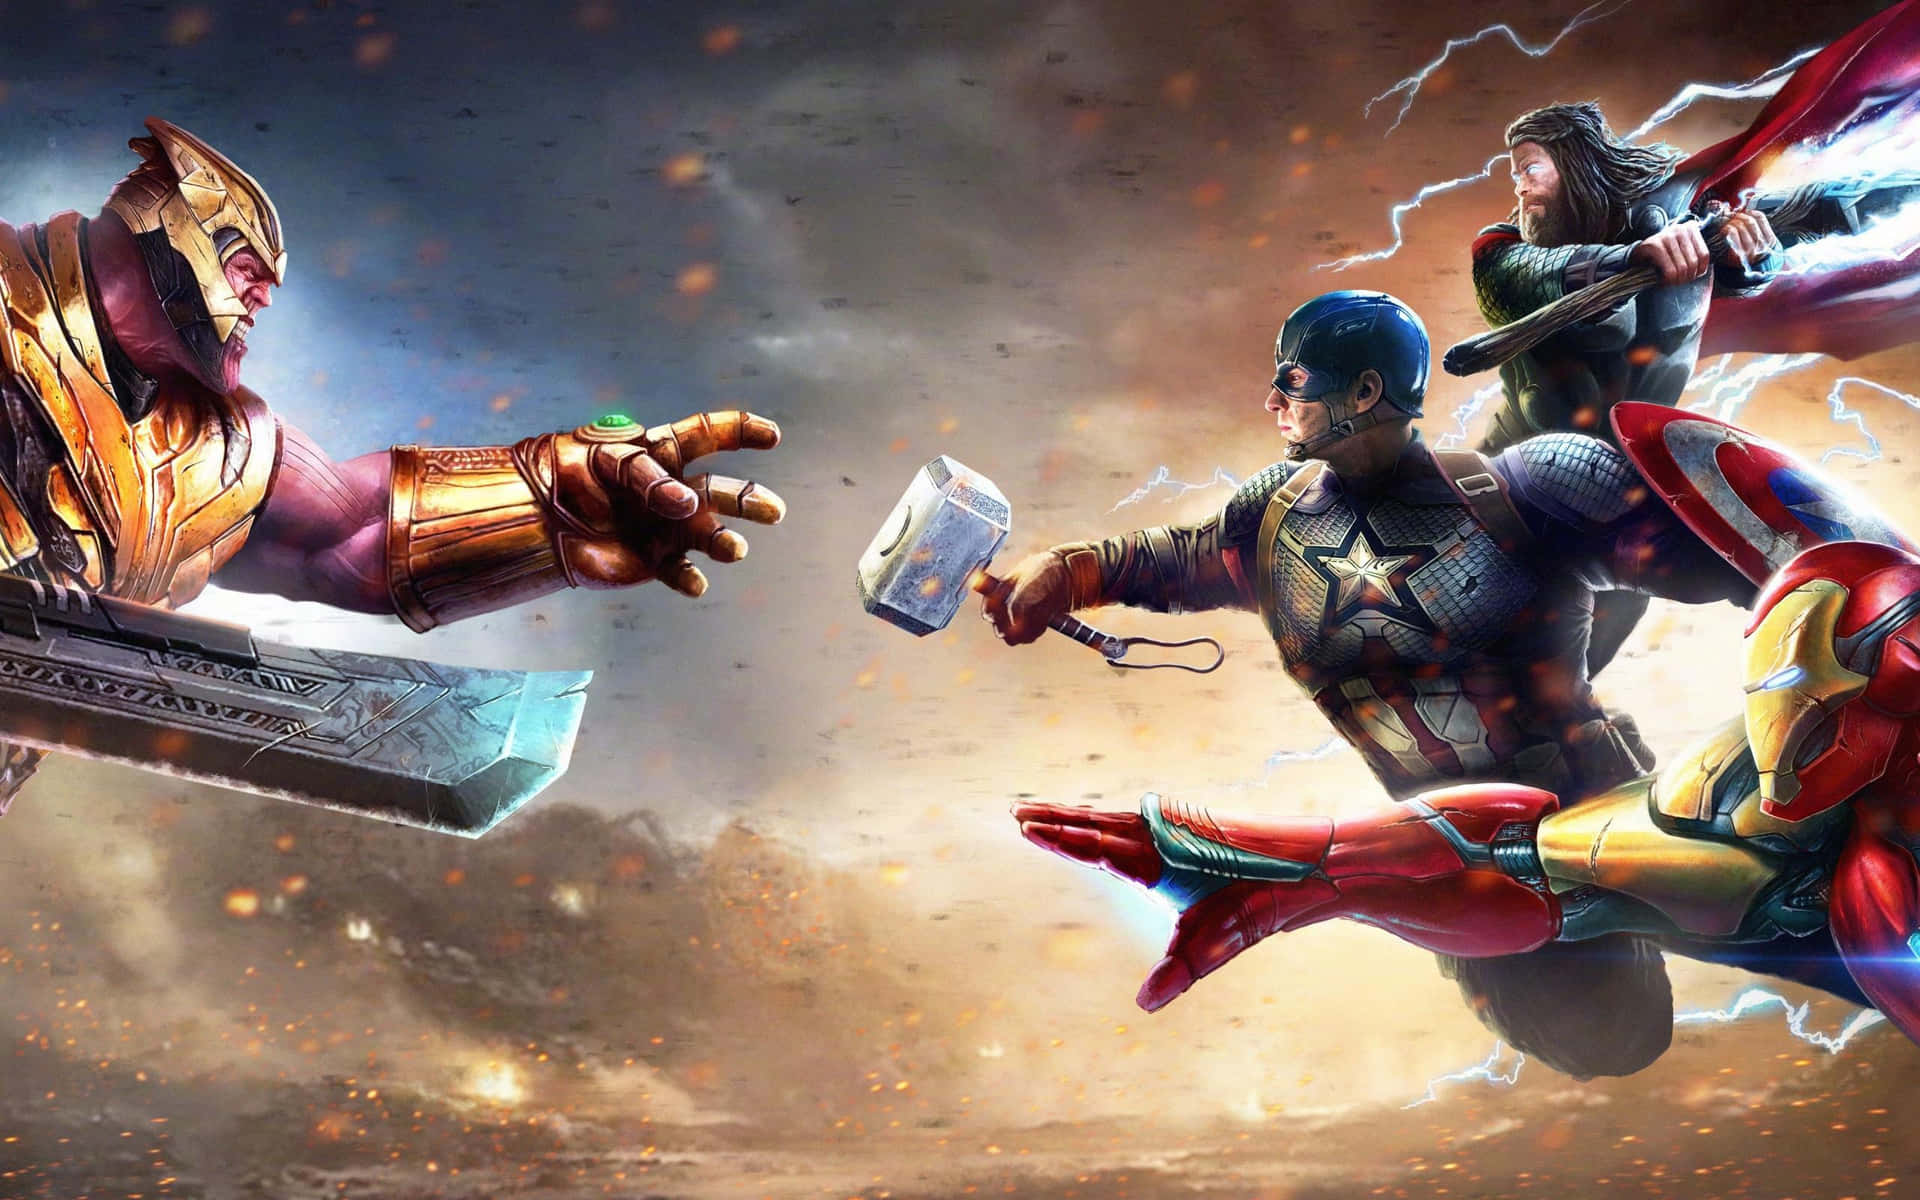 The powerful Tony Stark (Iron Man) vs the all powerful Thanos Wallpaper